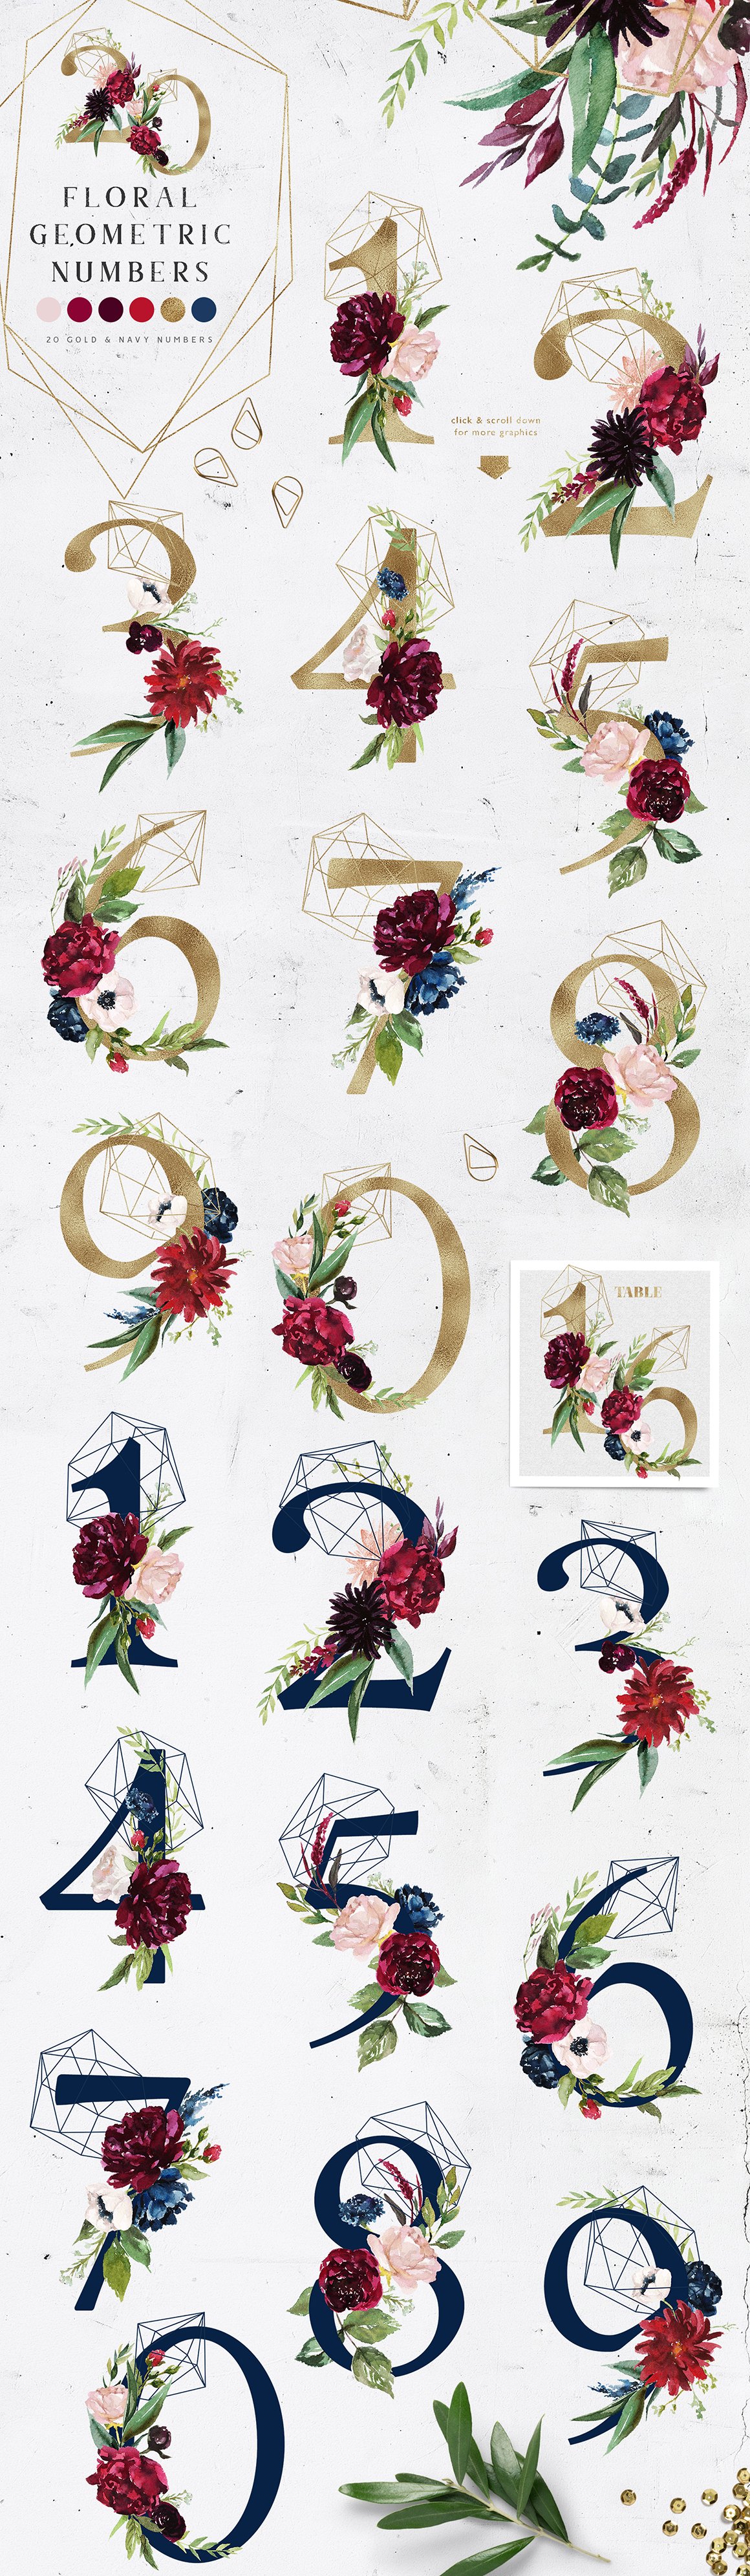 R For Romance - Massive Alphabet Floral Design Set